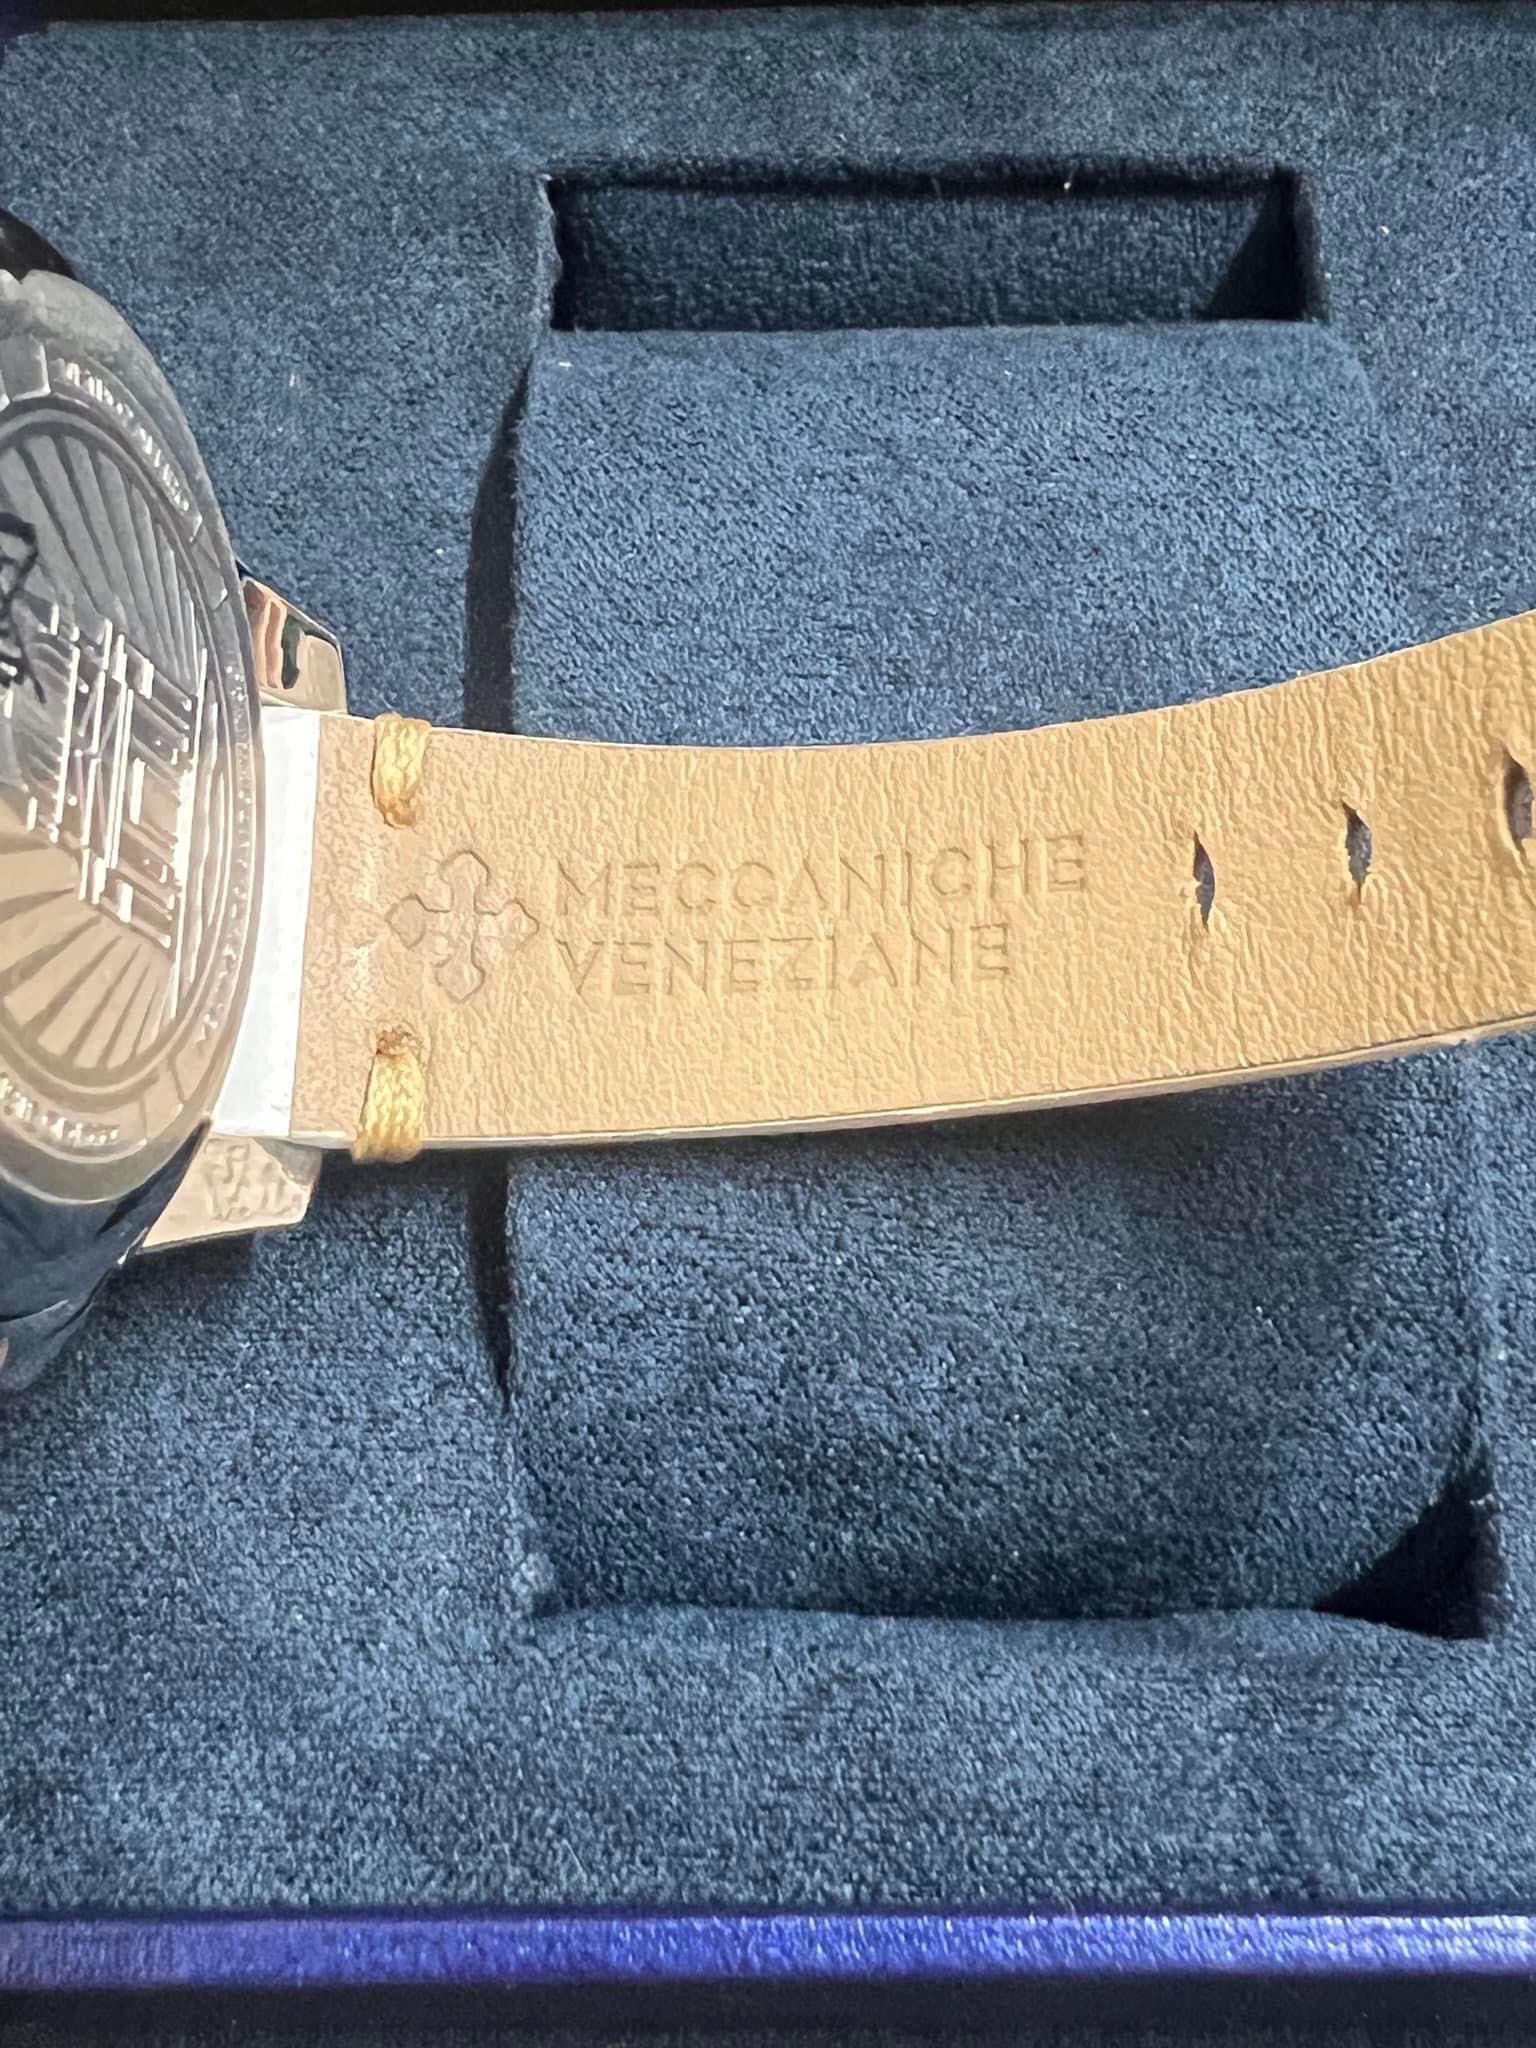 Meccaniche Veneziane Redentore Special Edition